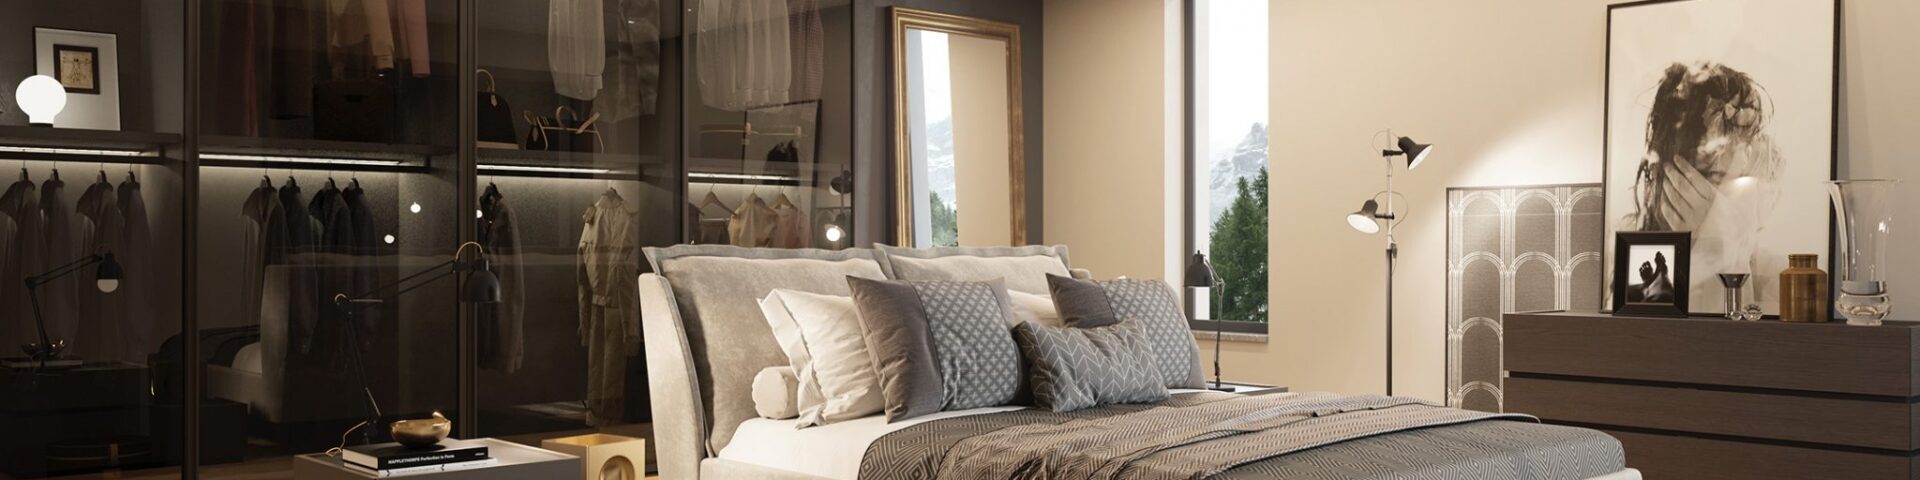 Camere da letto design moderno: funzionalità assoluta e stile libero  --- (Fonte immagine: https://comefareitalia.com/wp-content/uploads/2023/11/LETTO-1920x480.jpg)